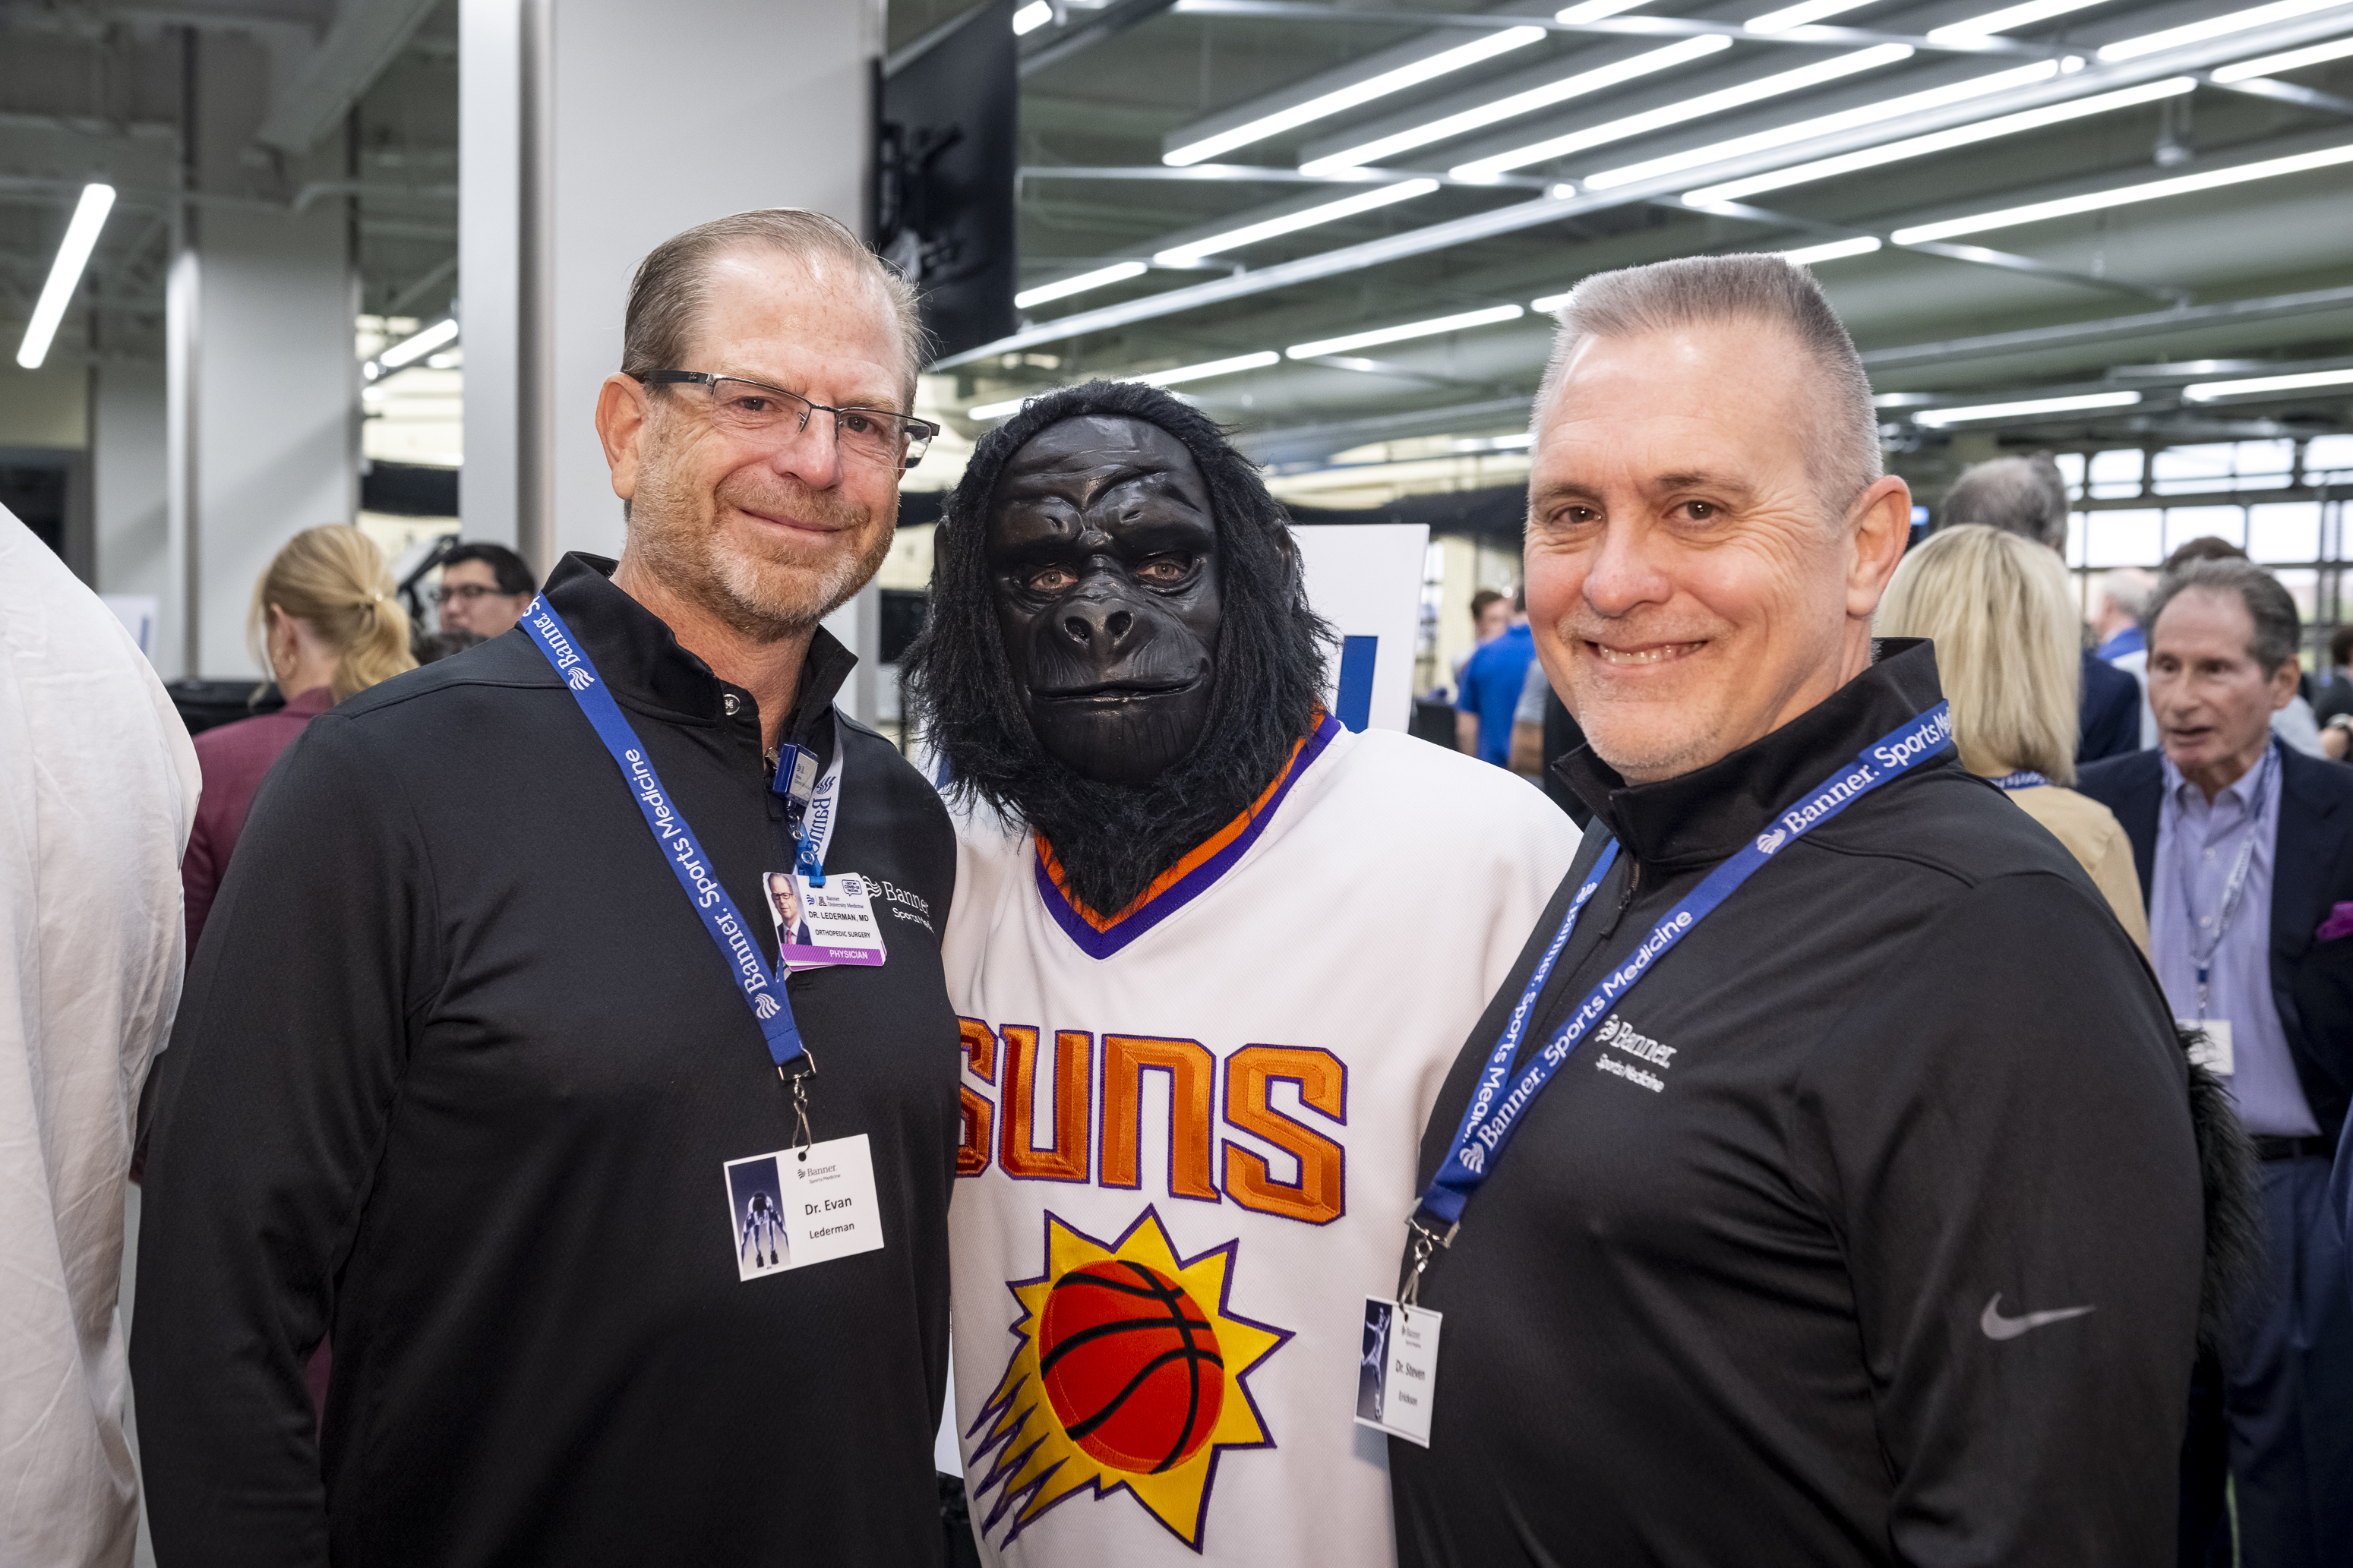 Dr. Evan Lederman, Go the Gorilla, and Dr. Steven Erickson